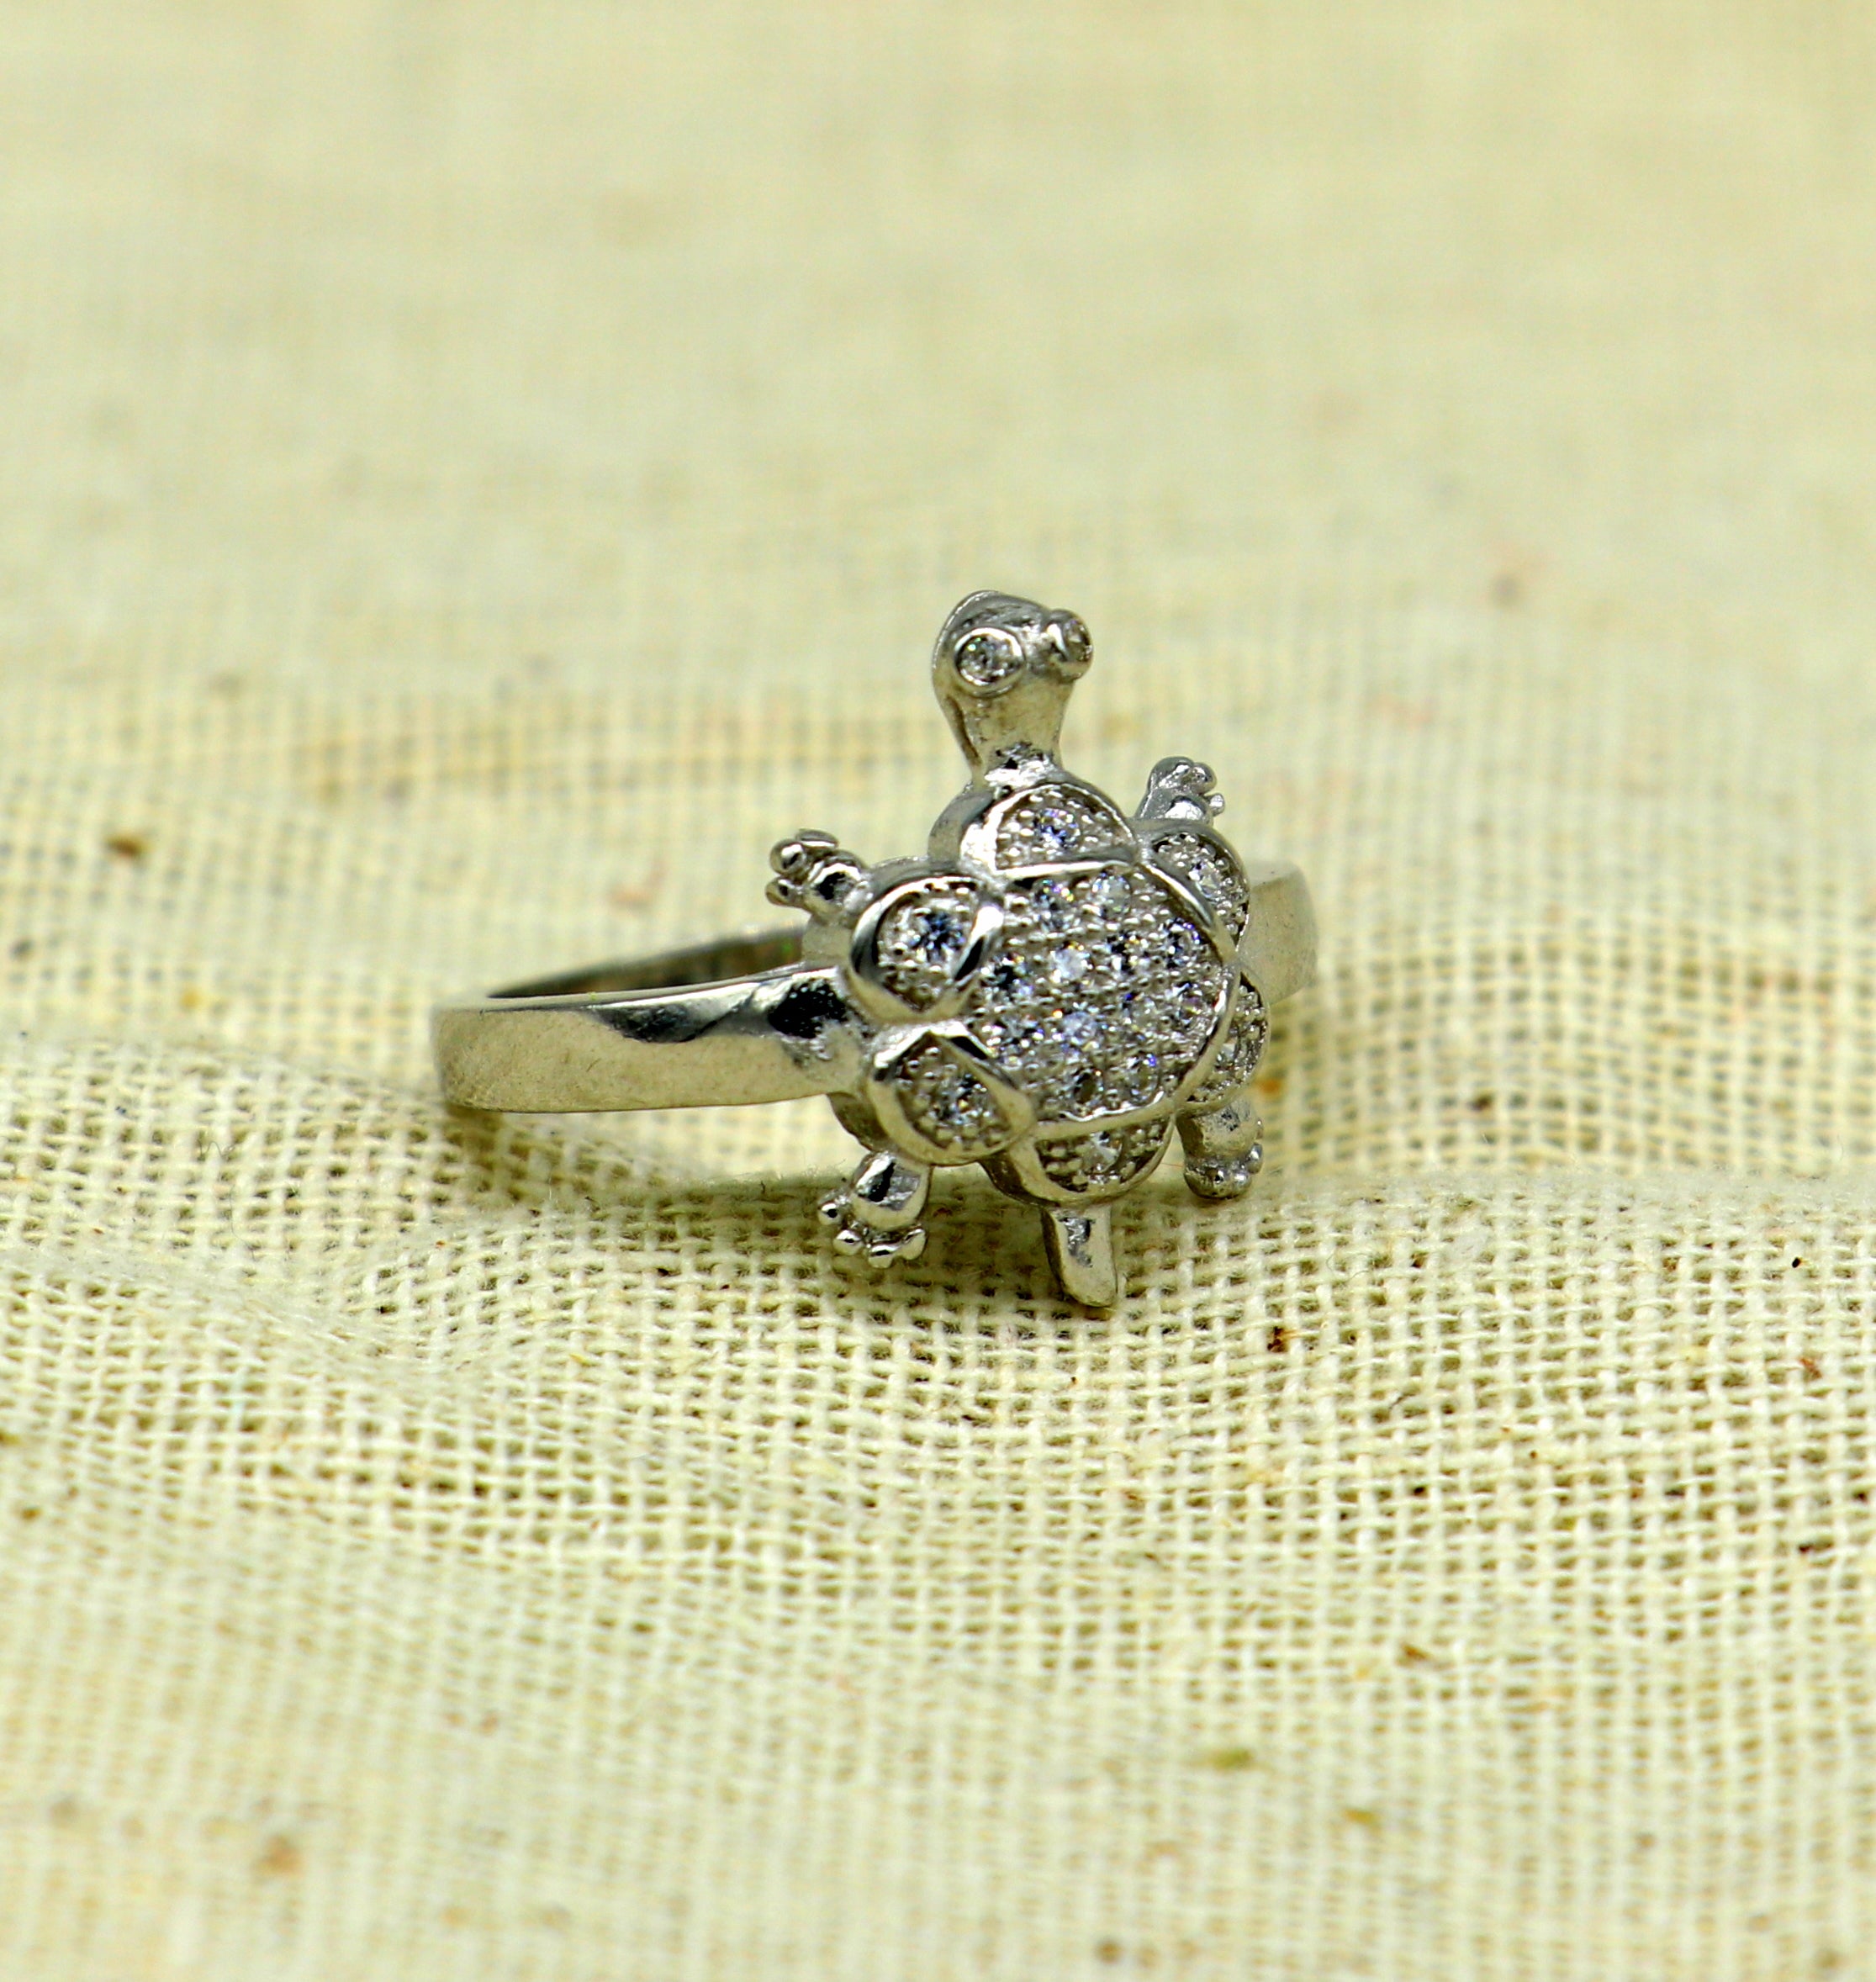 SEN ENTERPRISE Fengshui Sillver Tortoise Ring/ Kachua Ring/ Tortoise Ring  for Good Luck Silver Silver Plated Ring Price in India - Buy SEN ENTERPRISE  Fengshui Sillver Tortoise Ring/ Kachua Ring/ Tortoise Ring